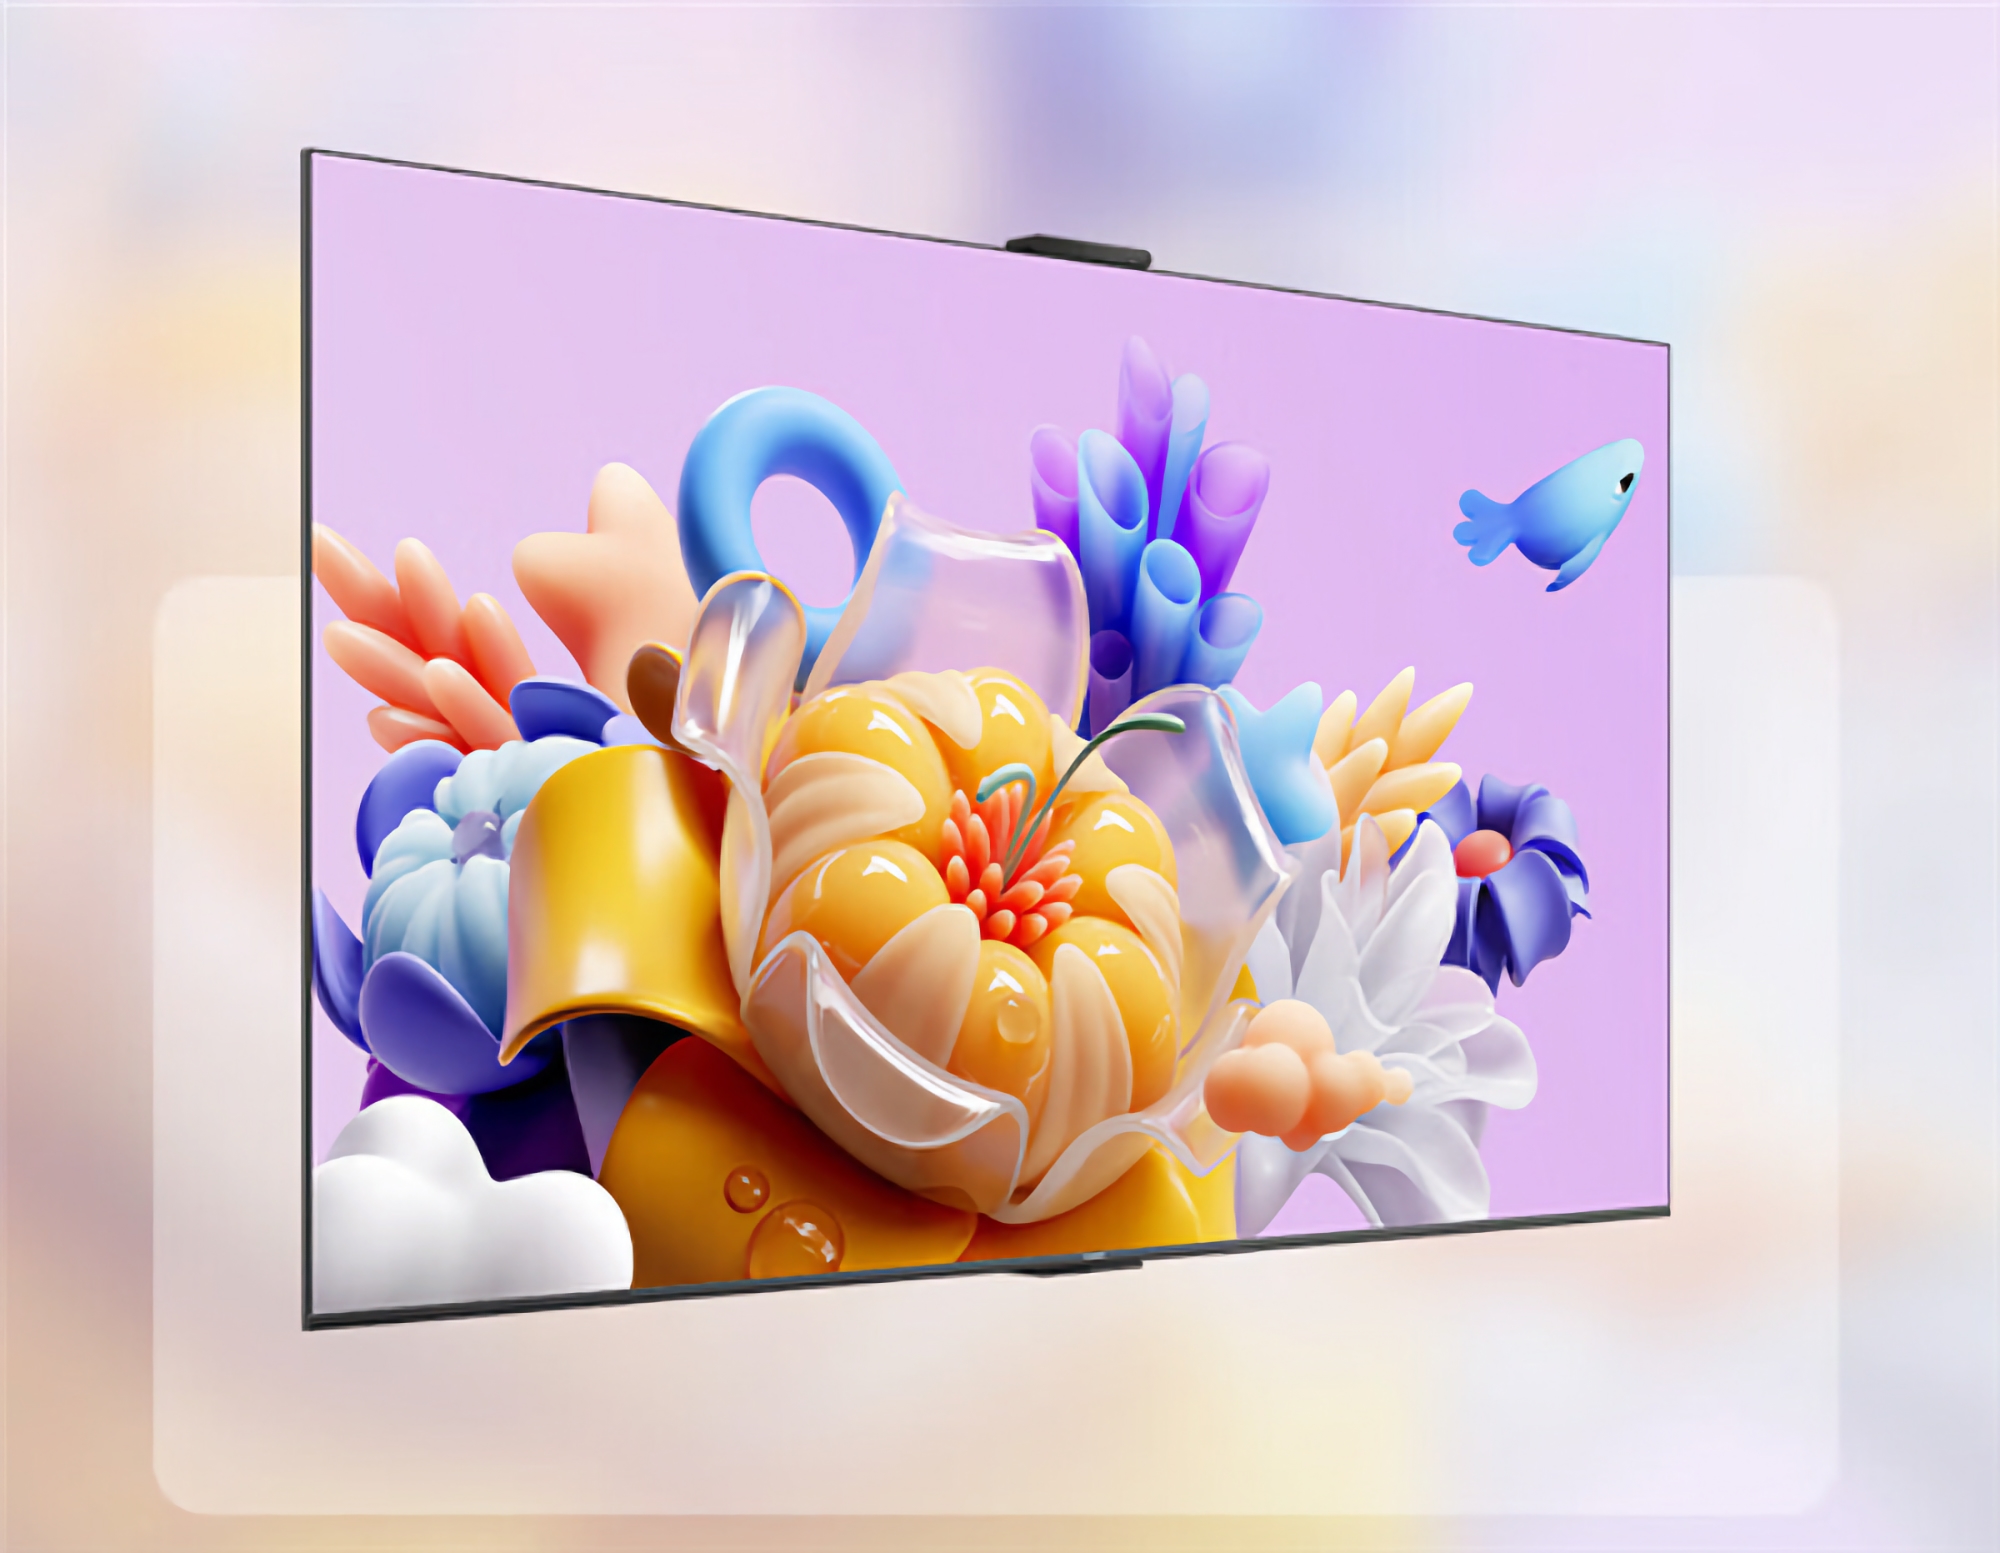 Rumores: Huawei presentará un nuevo televisor inteligente con pantalla de 75 pulgadas el 14 de marzo